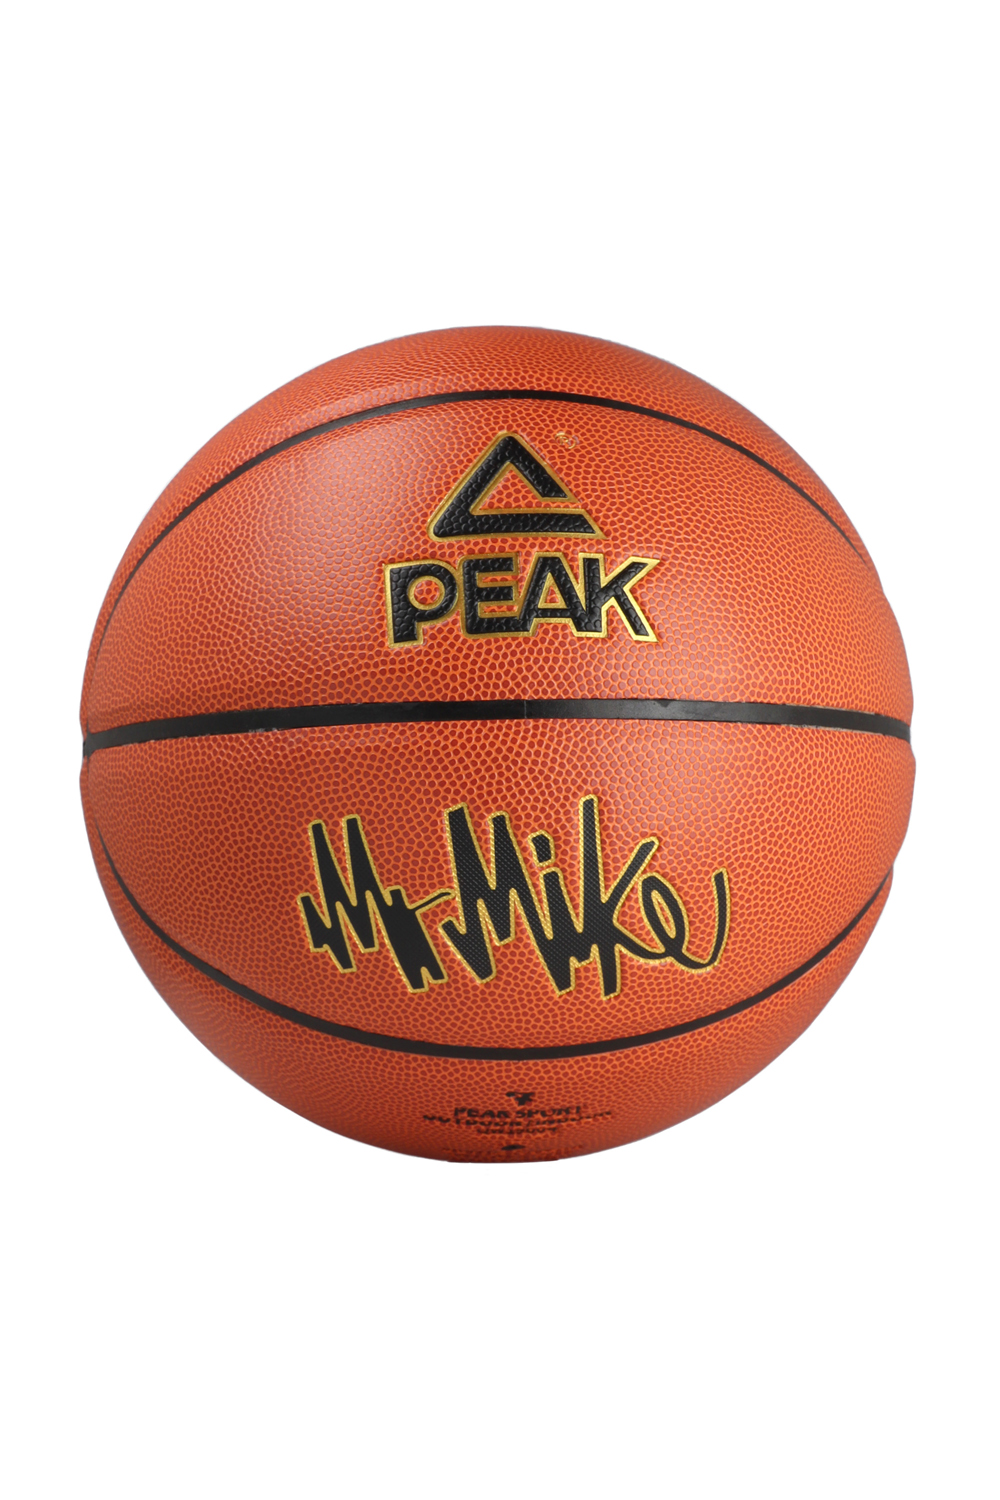 PEAK Basketball Mr. Mike